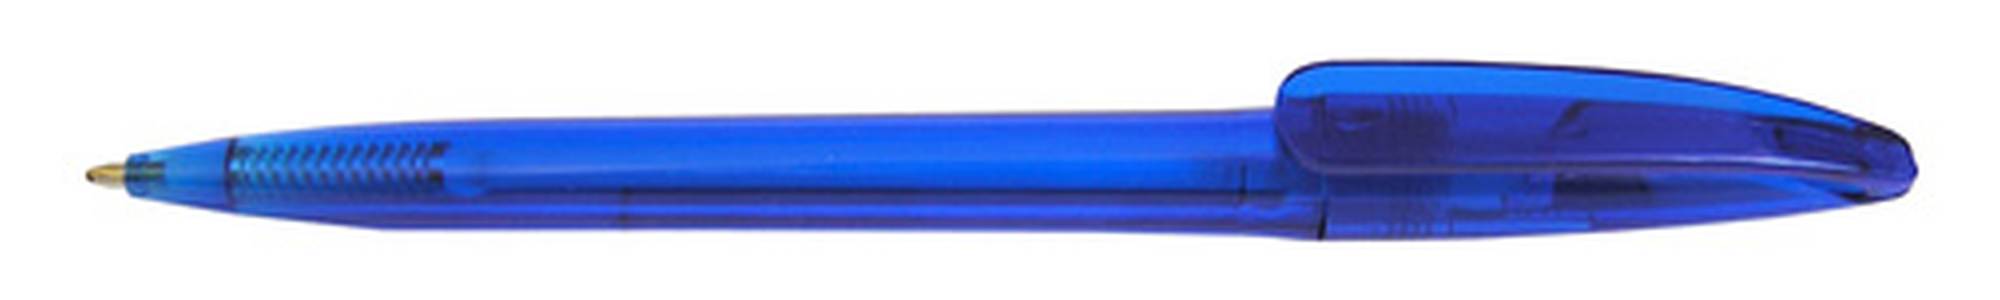 Długopis reklamowy plastikowy – Chili